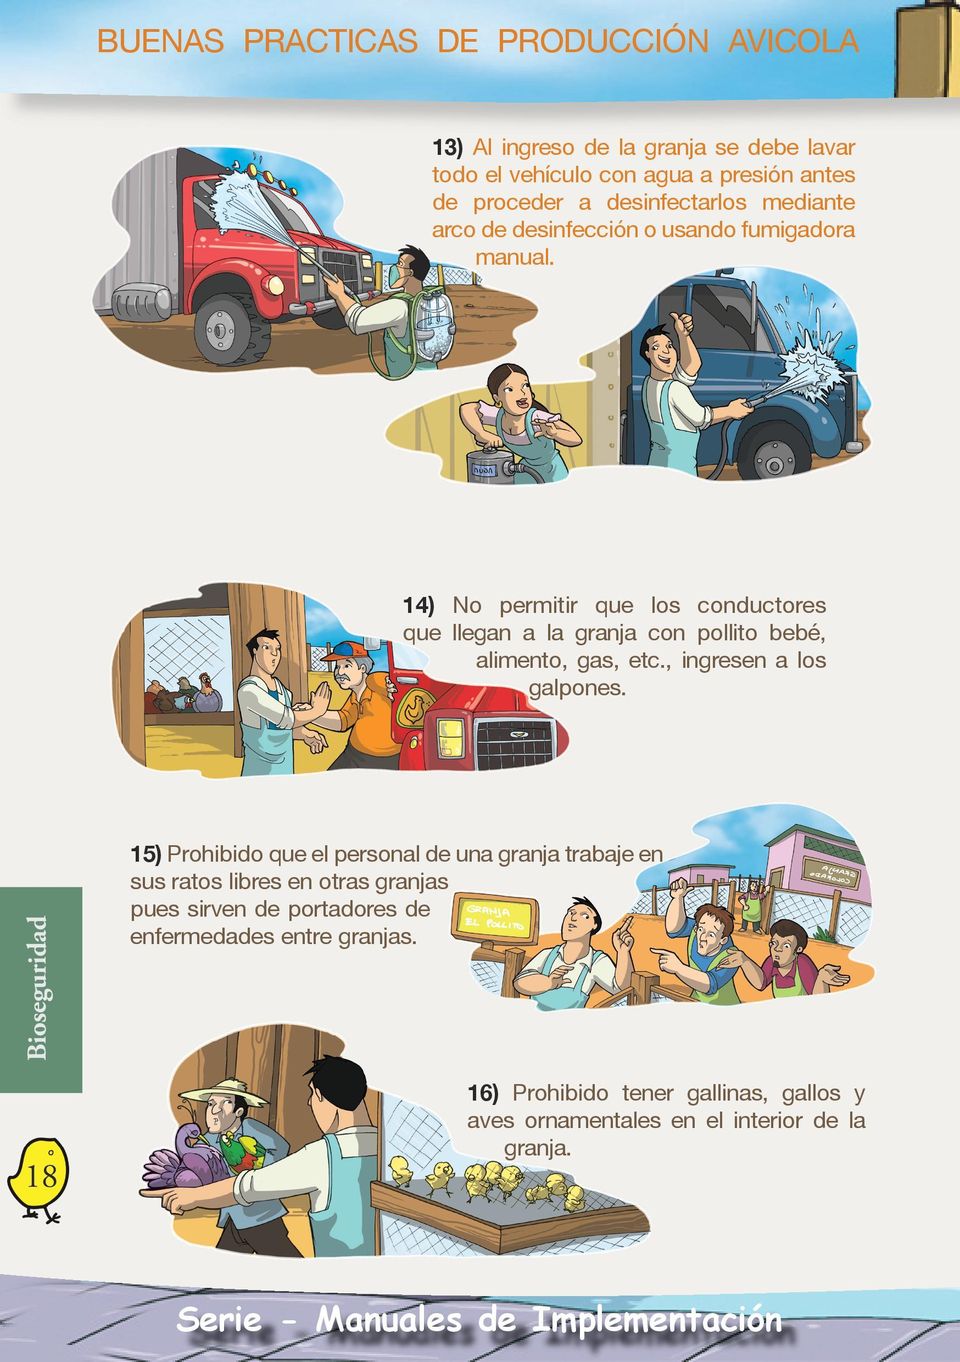 14) No permitir que los conductores que llegan a la granja con pollito bebé, alimento, gas, etc., ingresen a los galpones.